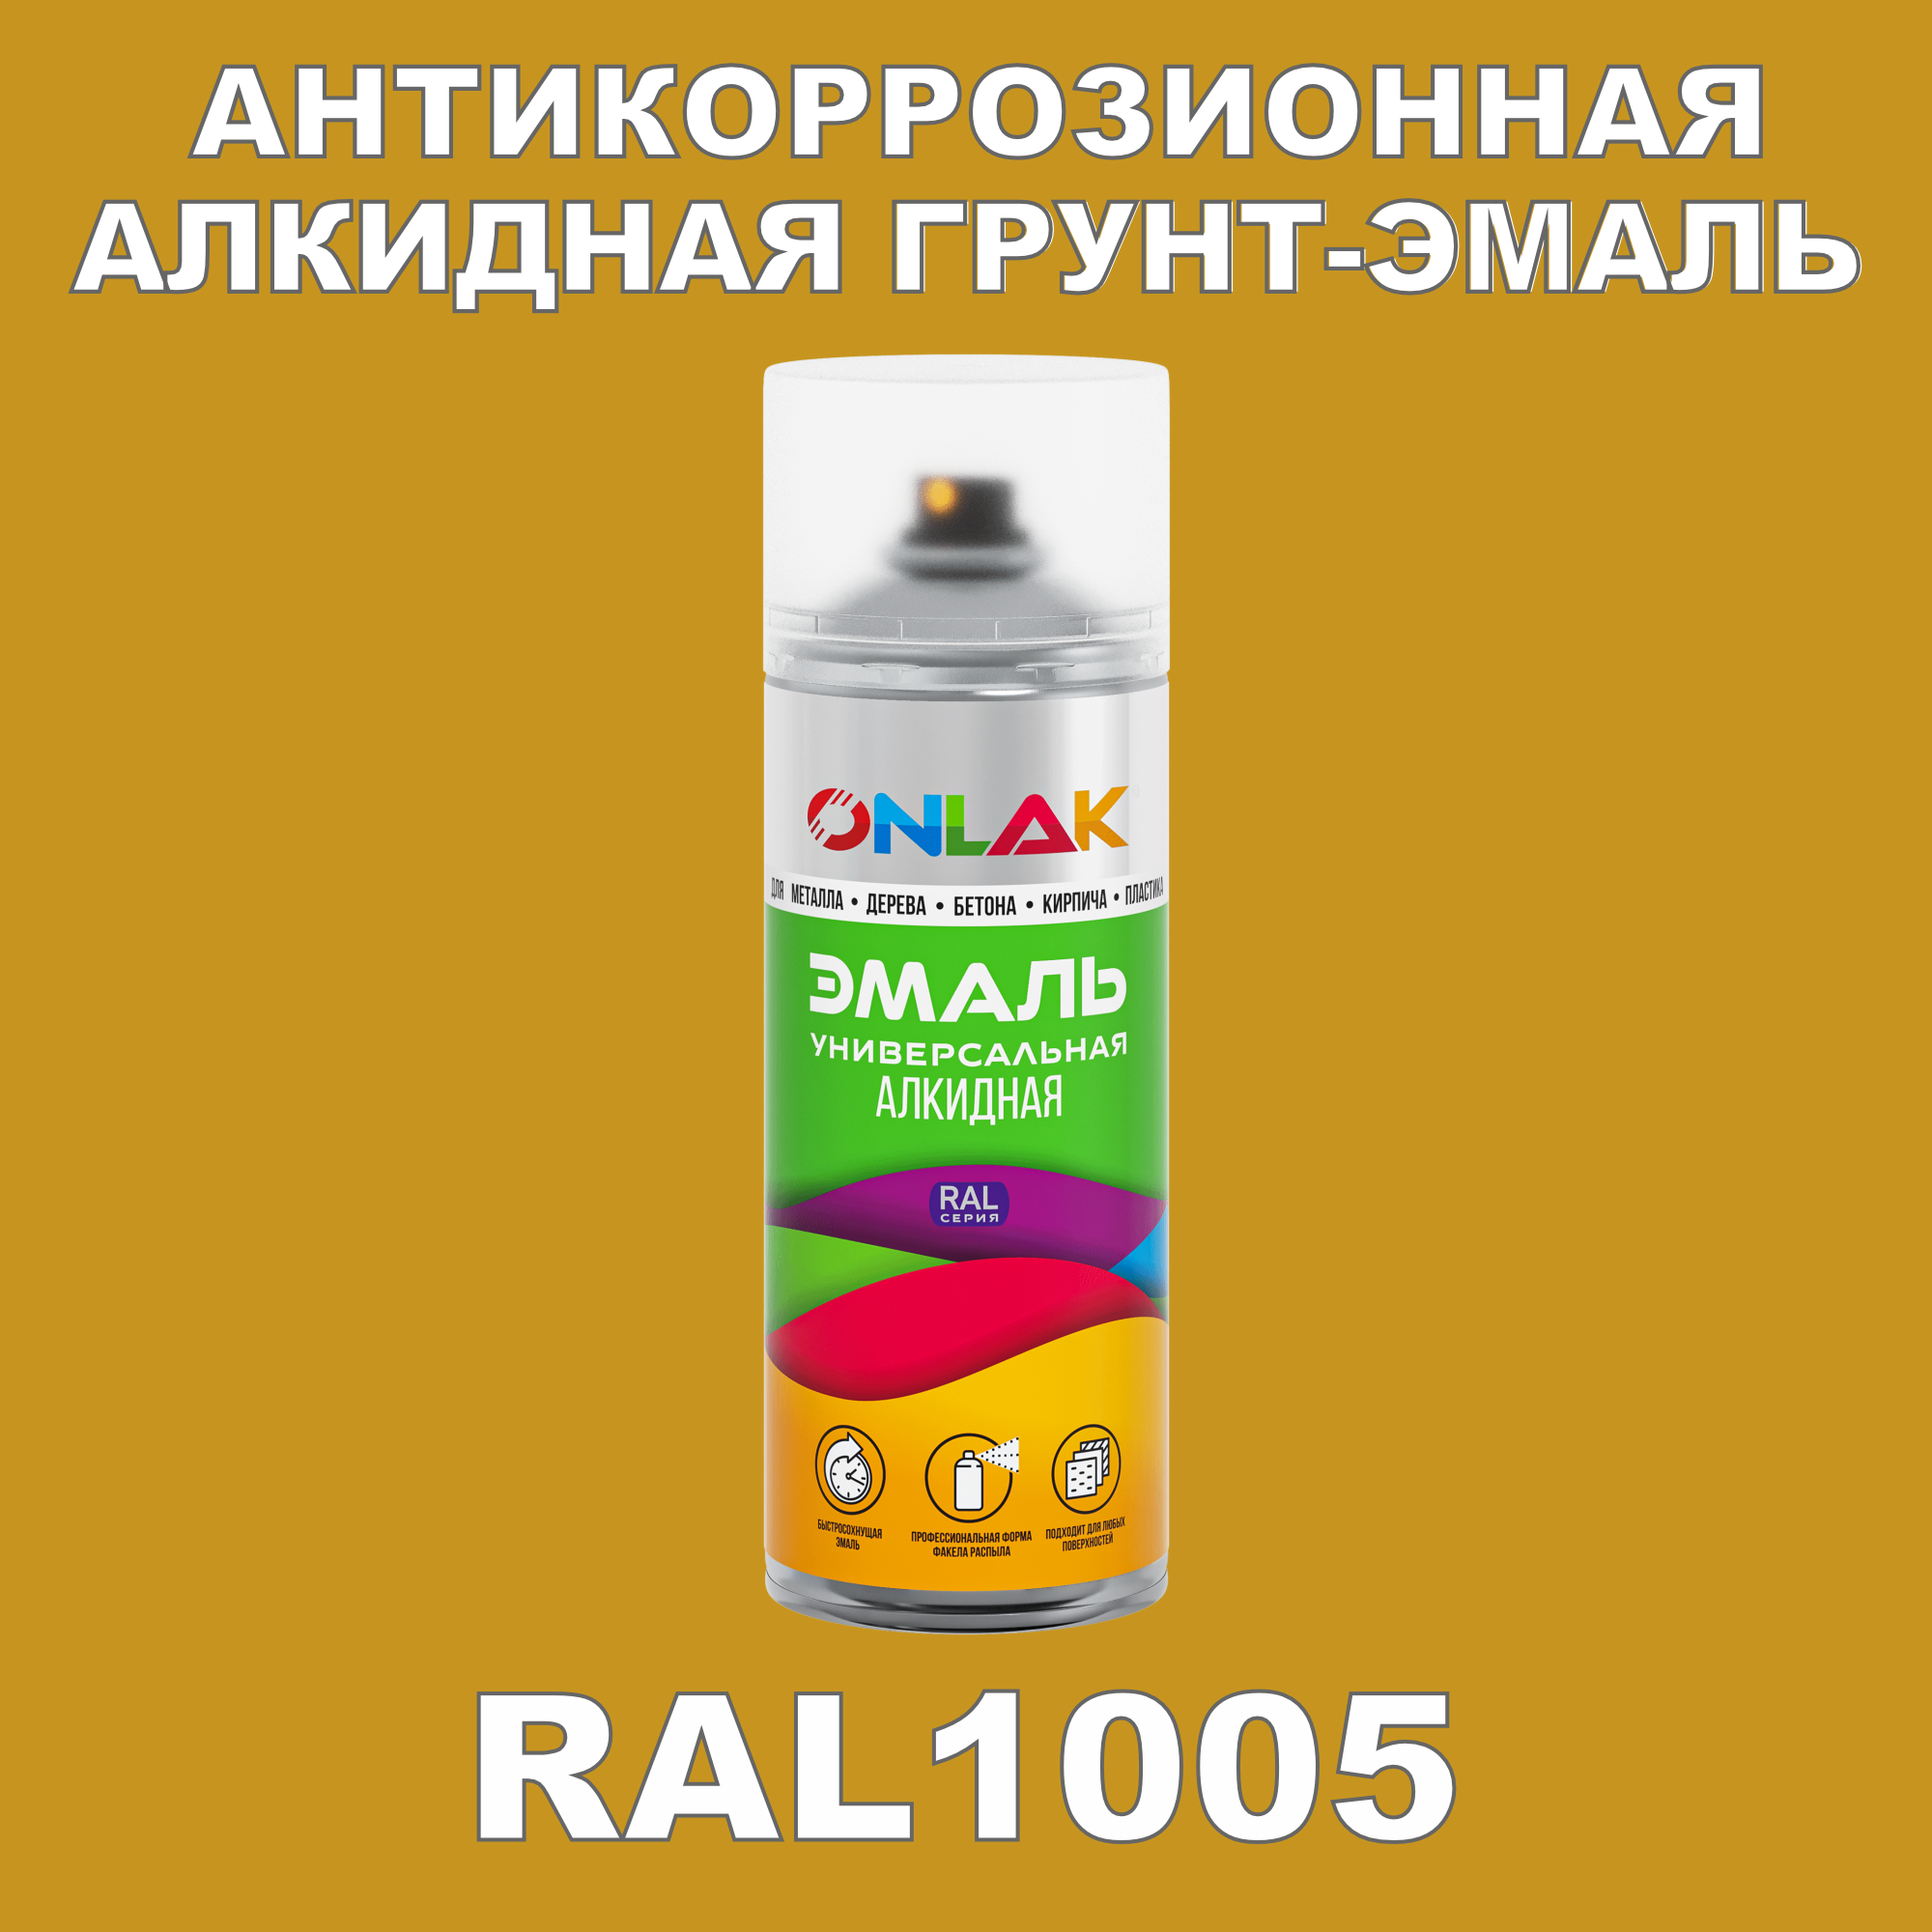 Антикоррозионная грунт-эмаль ONLAK RAL1005 полуматовая для металла и защиты от ржавчины